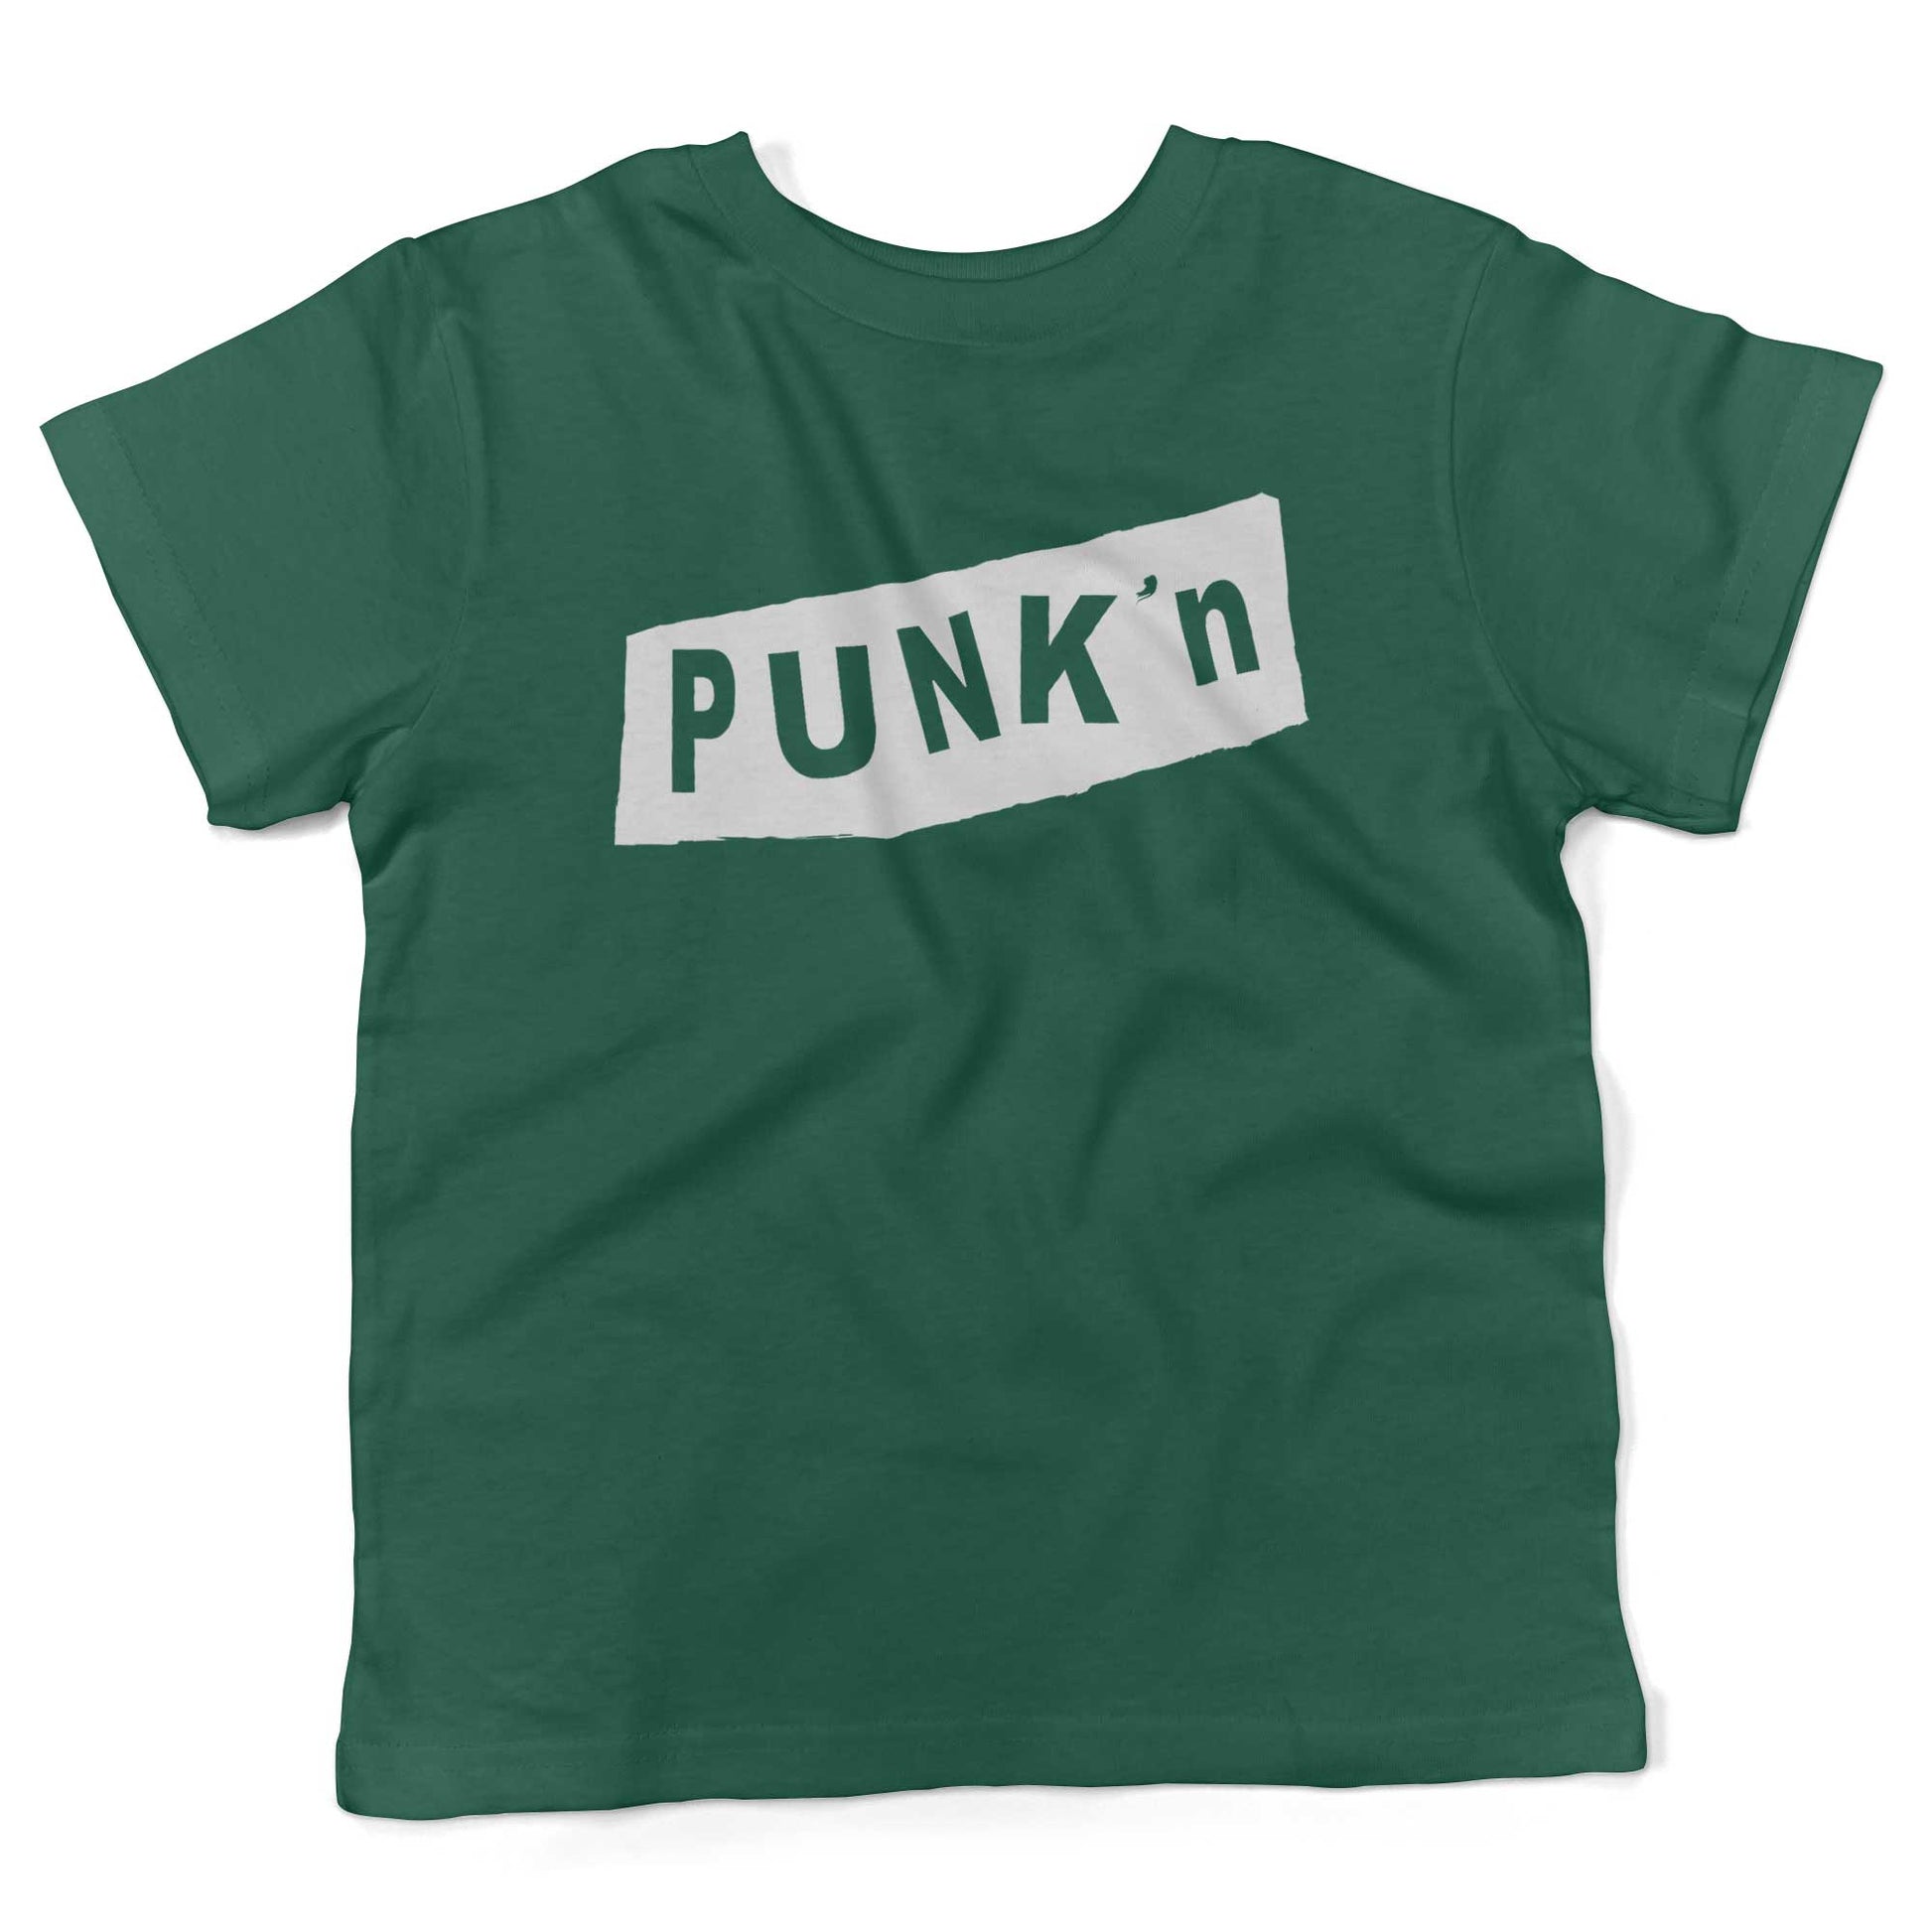 Pumpkin Punk'n Toddler Shirt-Kelly Green-2T